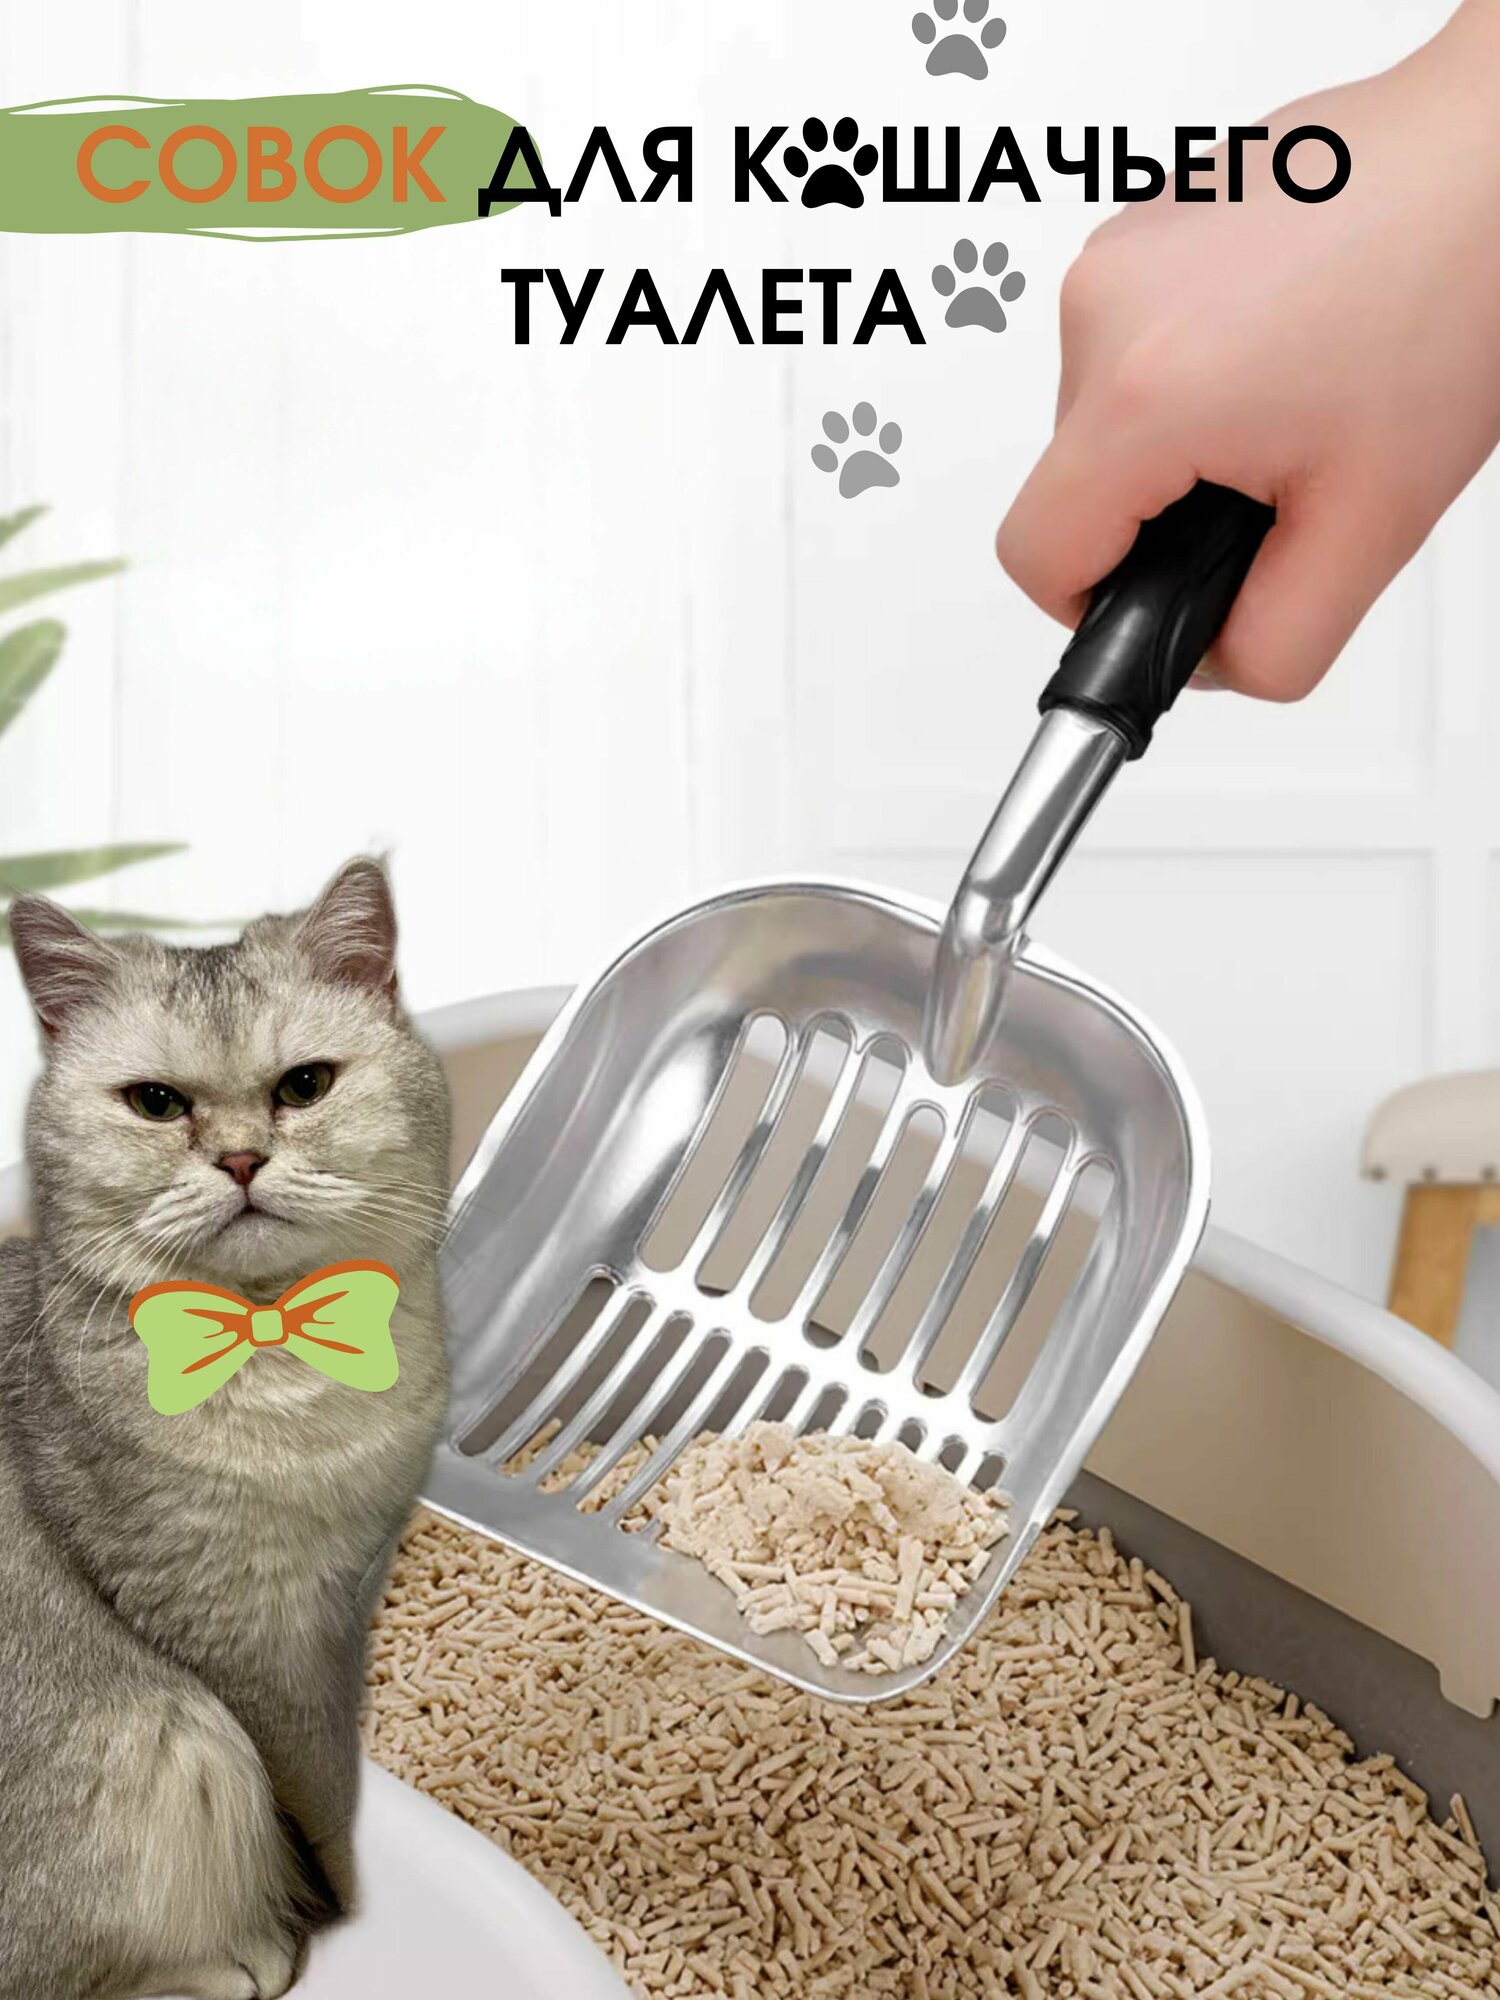 Металлический совок - лопатка для уборки кошачьего туалета